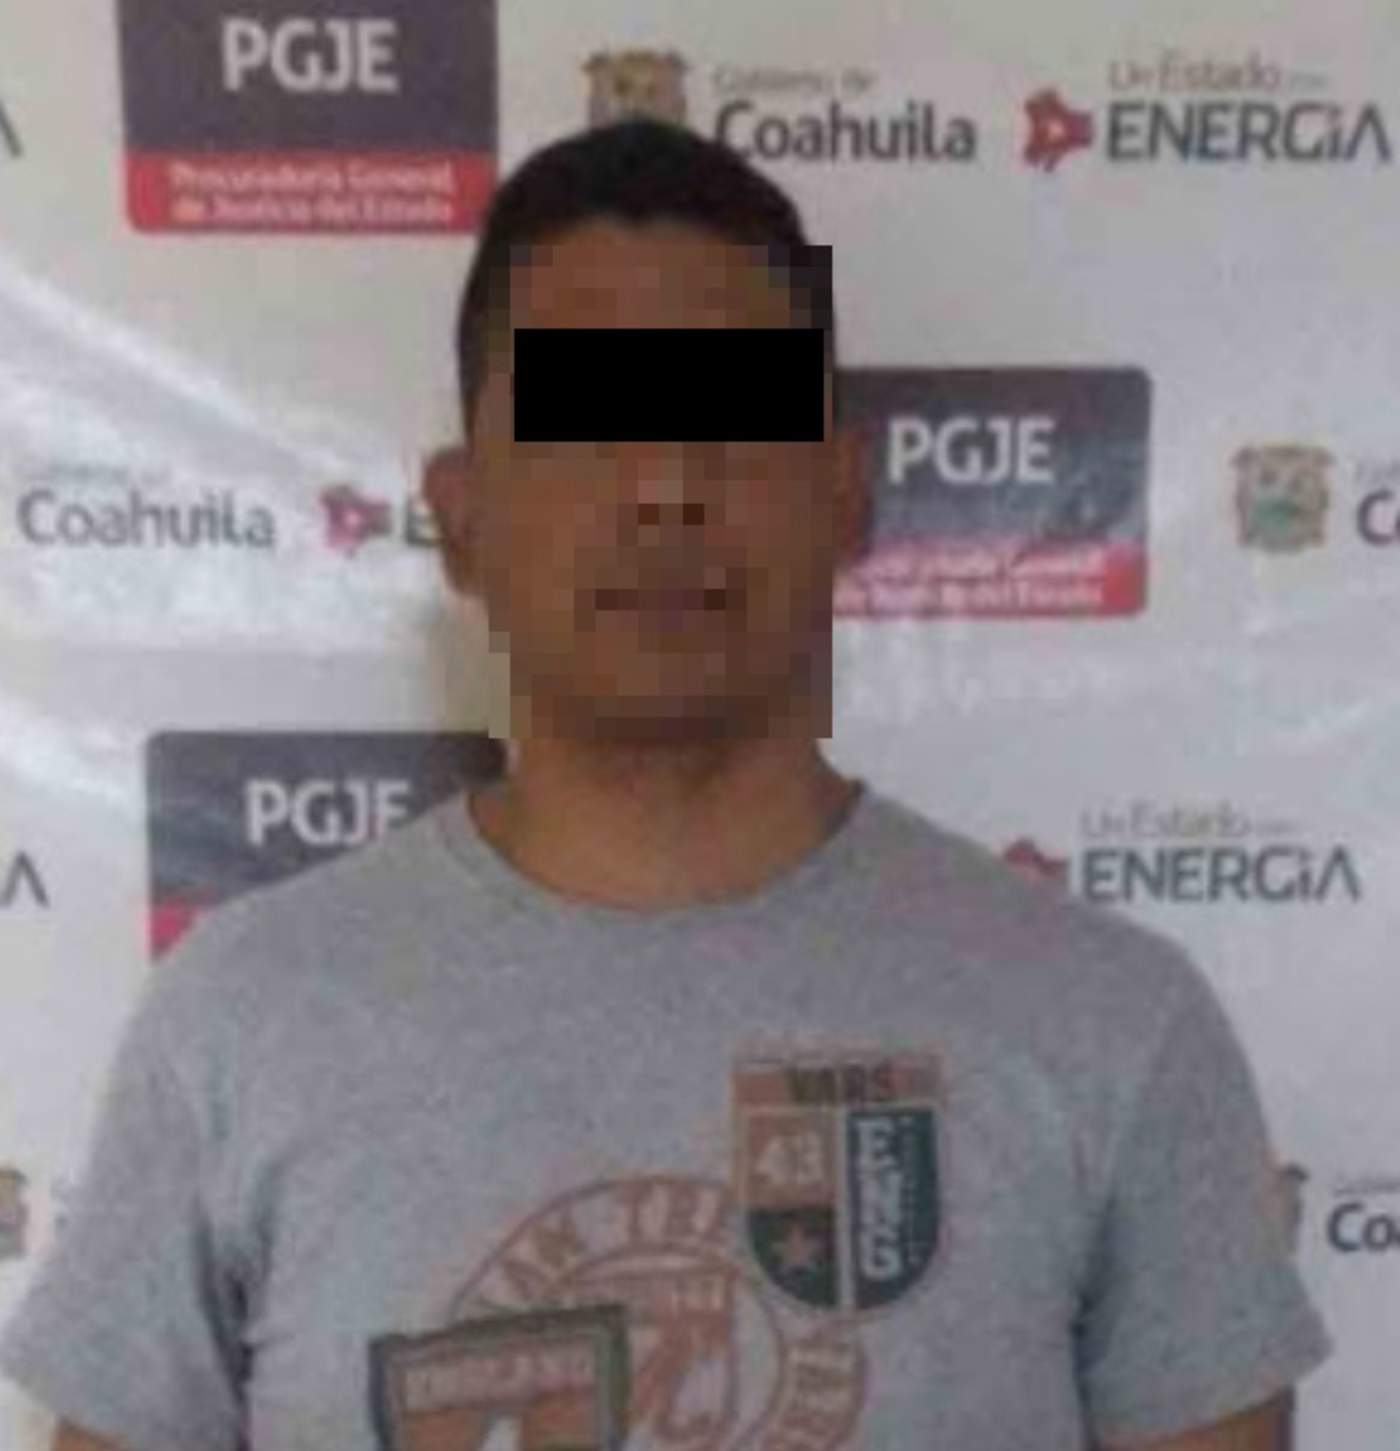 Los hechos por los que personal de la Fiscalía de Personas Desaparecidas inició la averiguación penal en contra de Édgar Rodríguez Villa, se registraron el día 29 de septiembre del año 2011. (ESPECIAL)